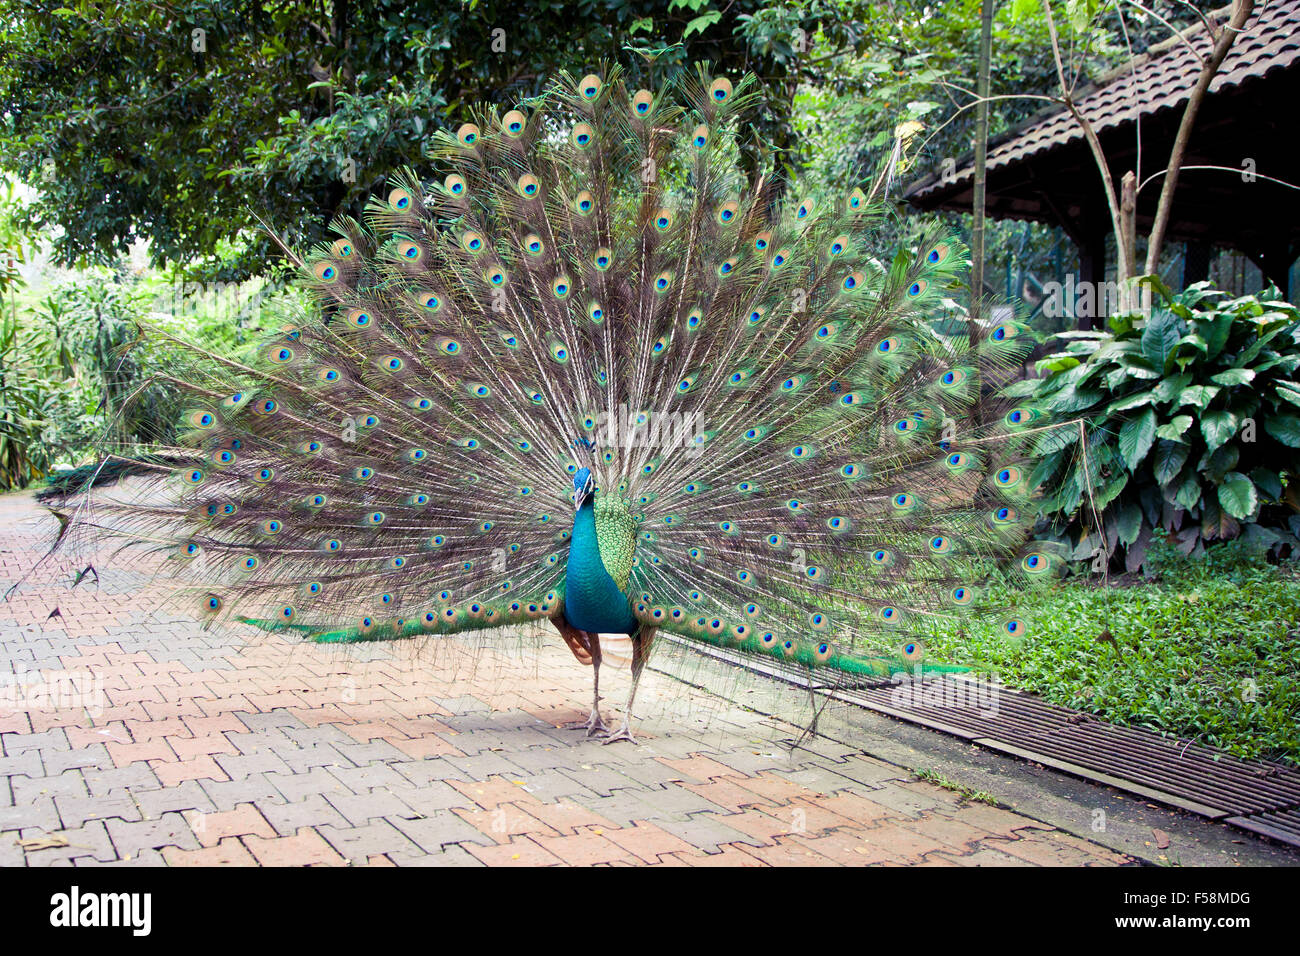 Peacock in Kuala Lumpur Bird Park, Malaysia. Stock Photo